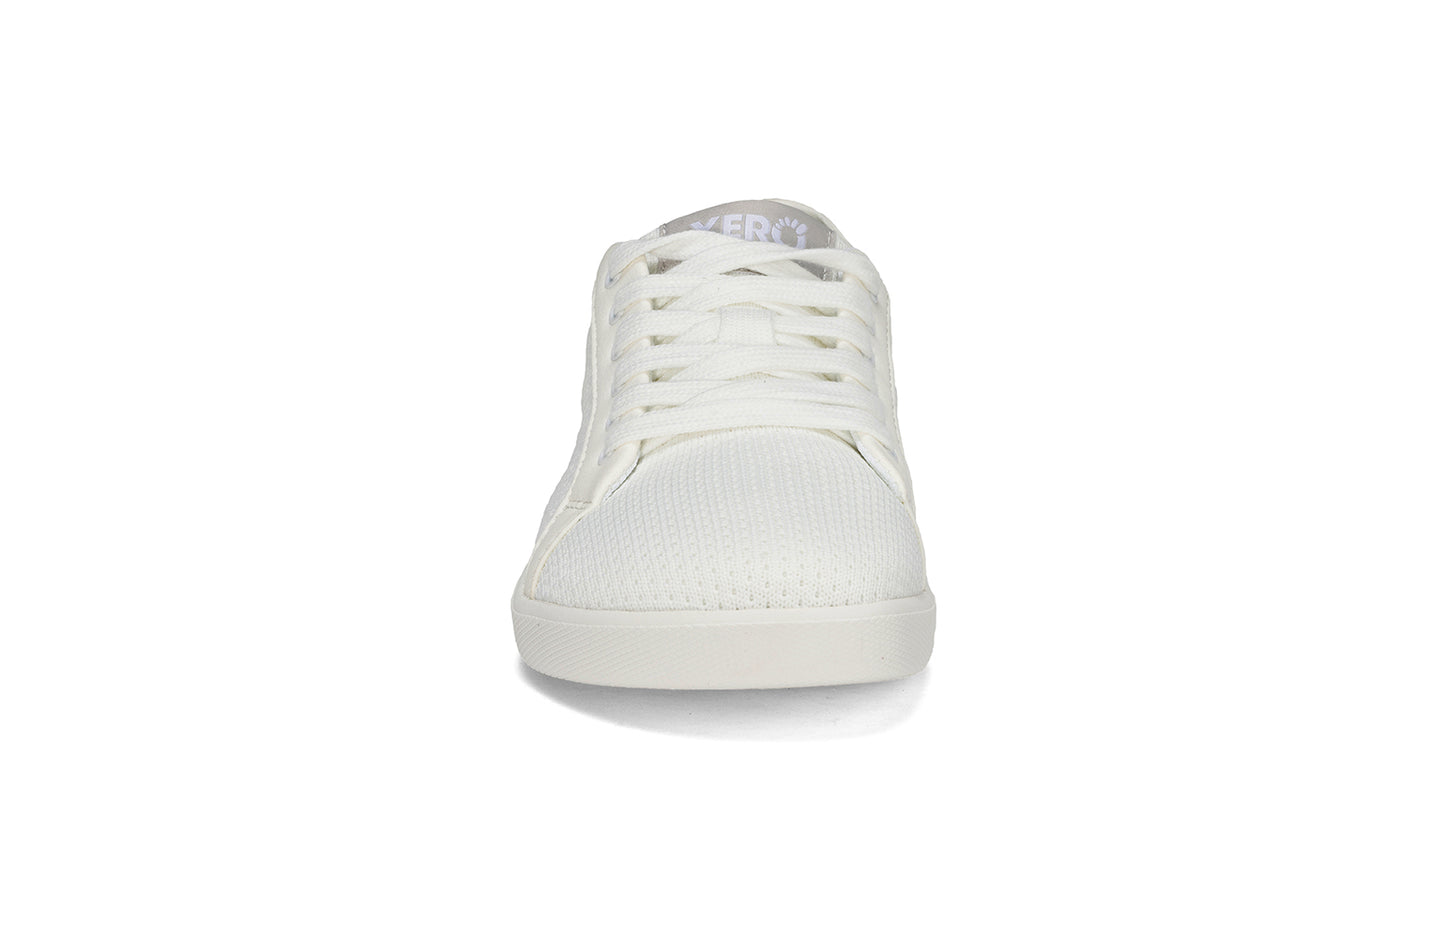 Xero Shoes - Dillon - White - Women's